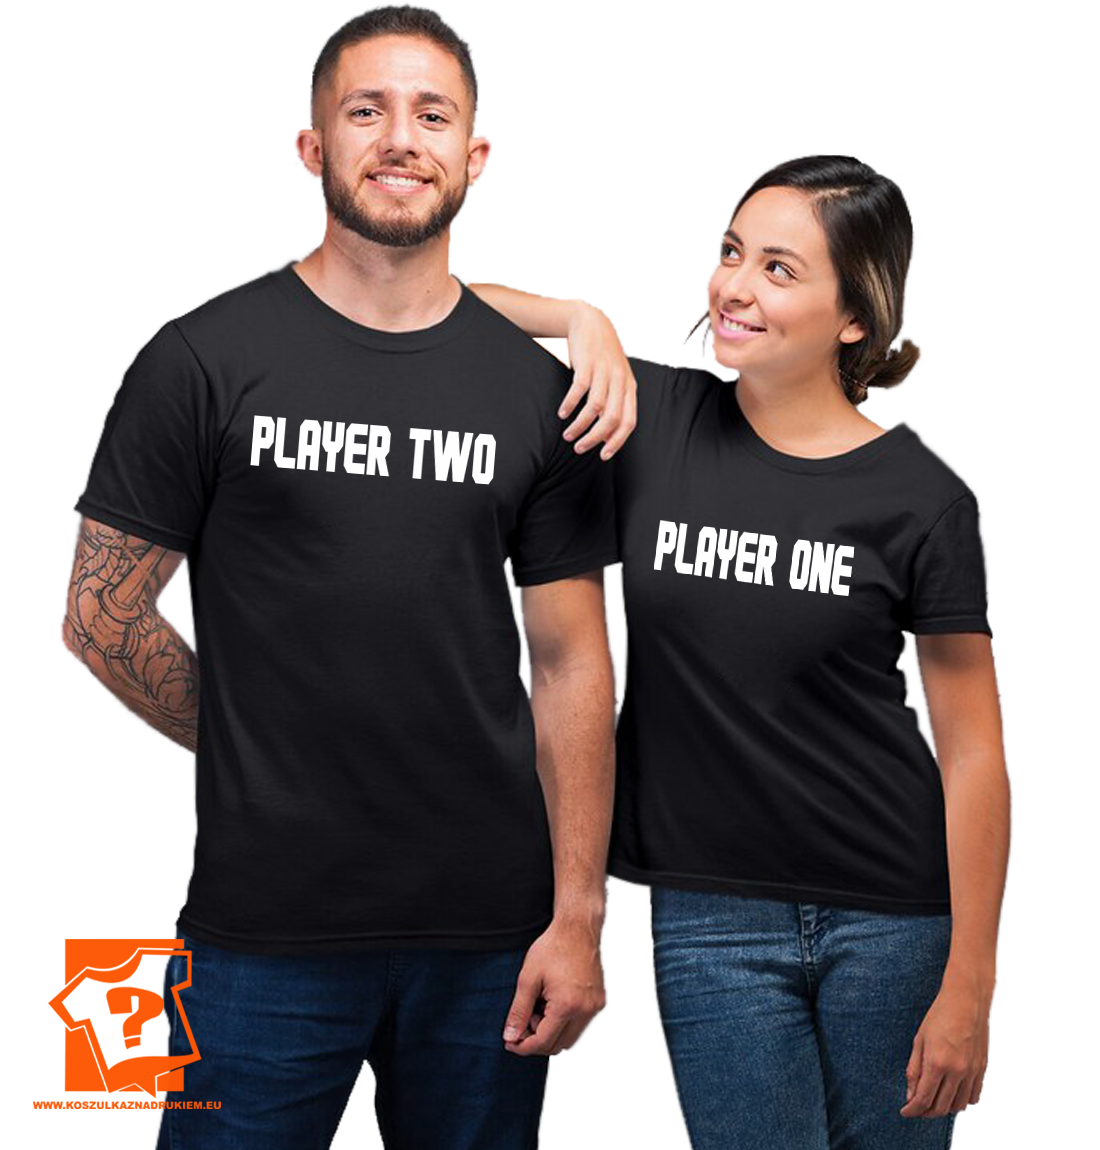 Koszulka na walentynki dla par zakochanych dla dwojga - player one player two